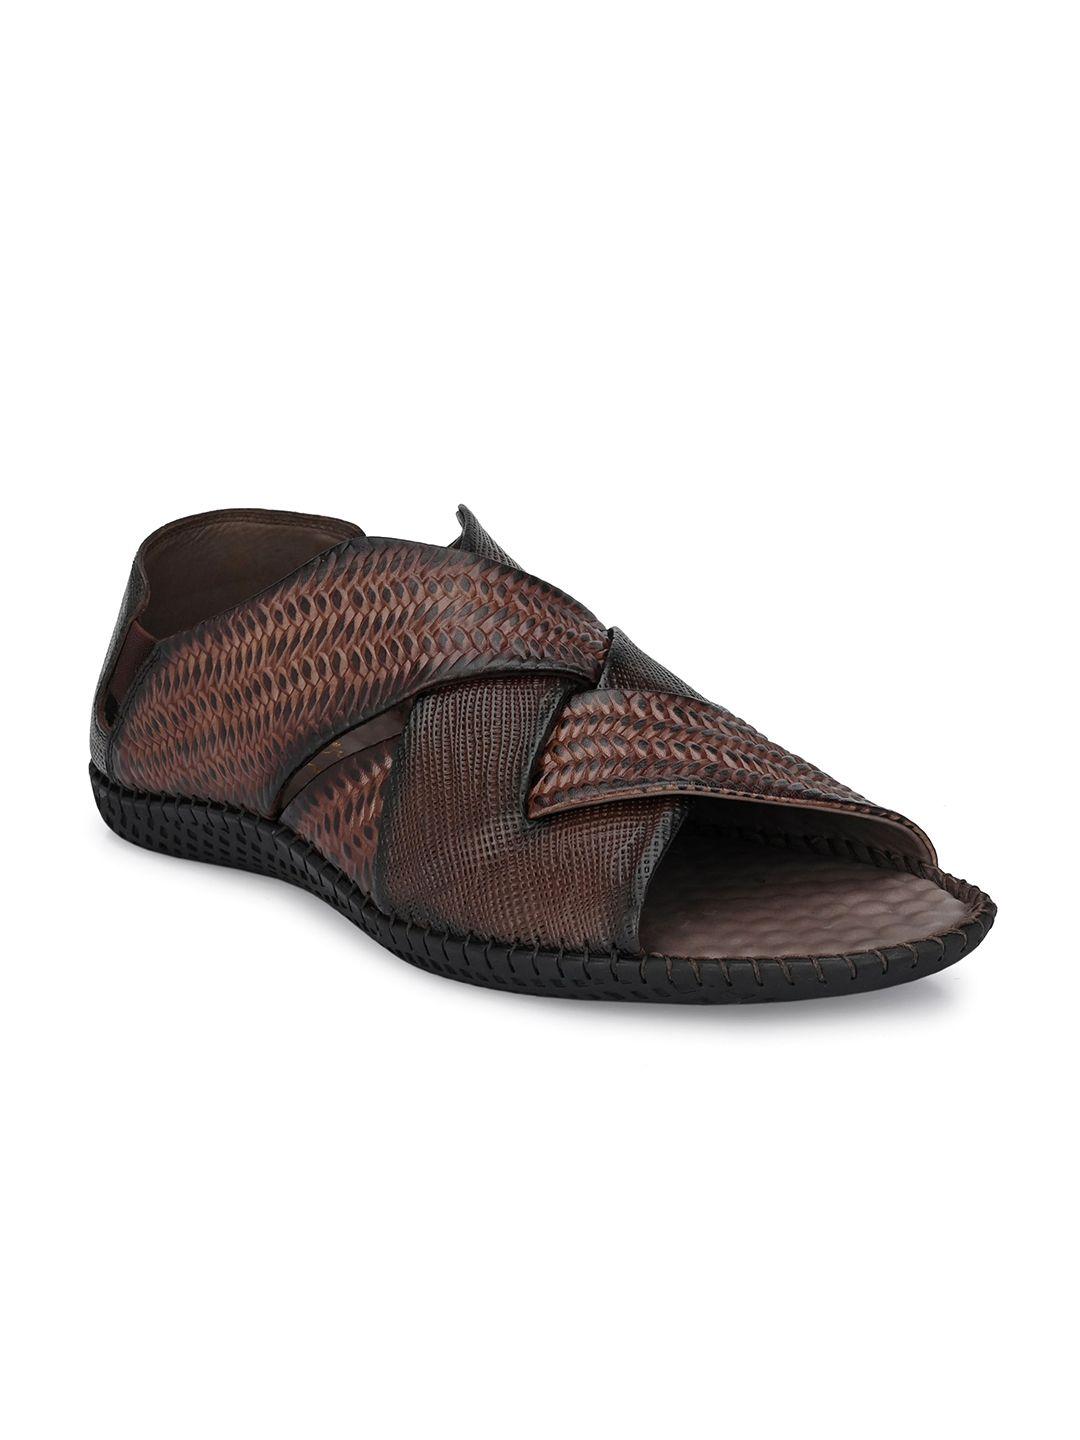 hitz men brown leather comfort sandals